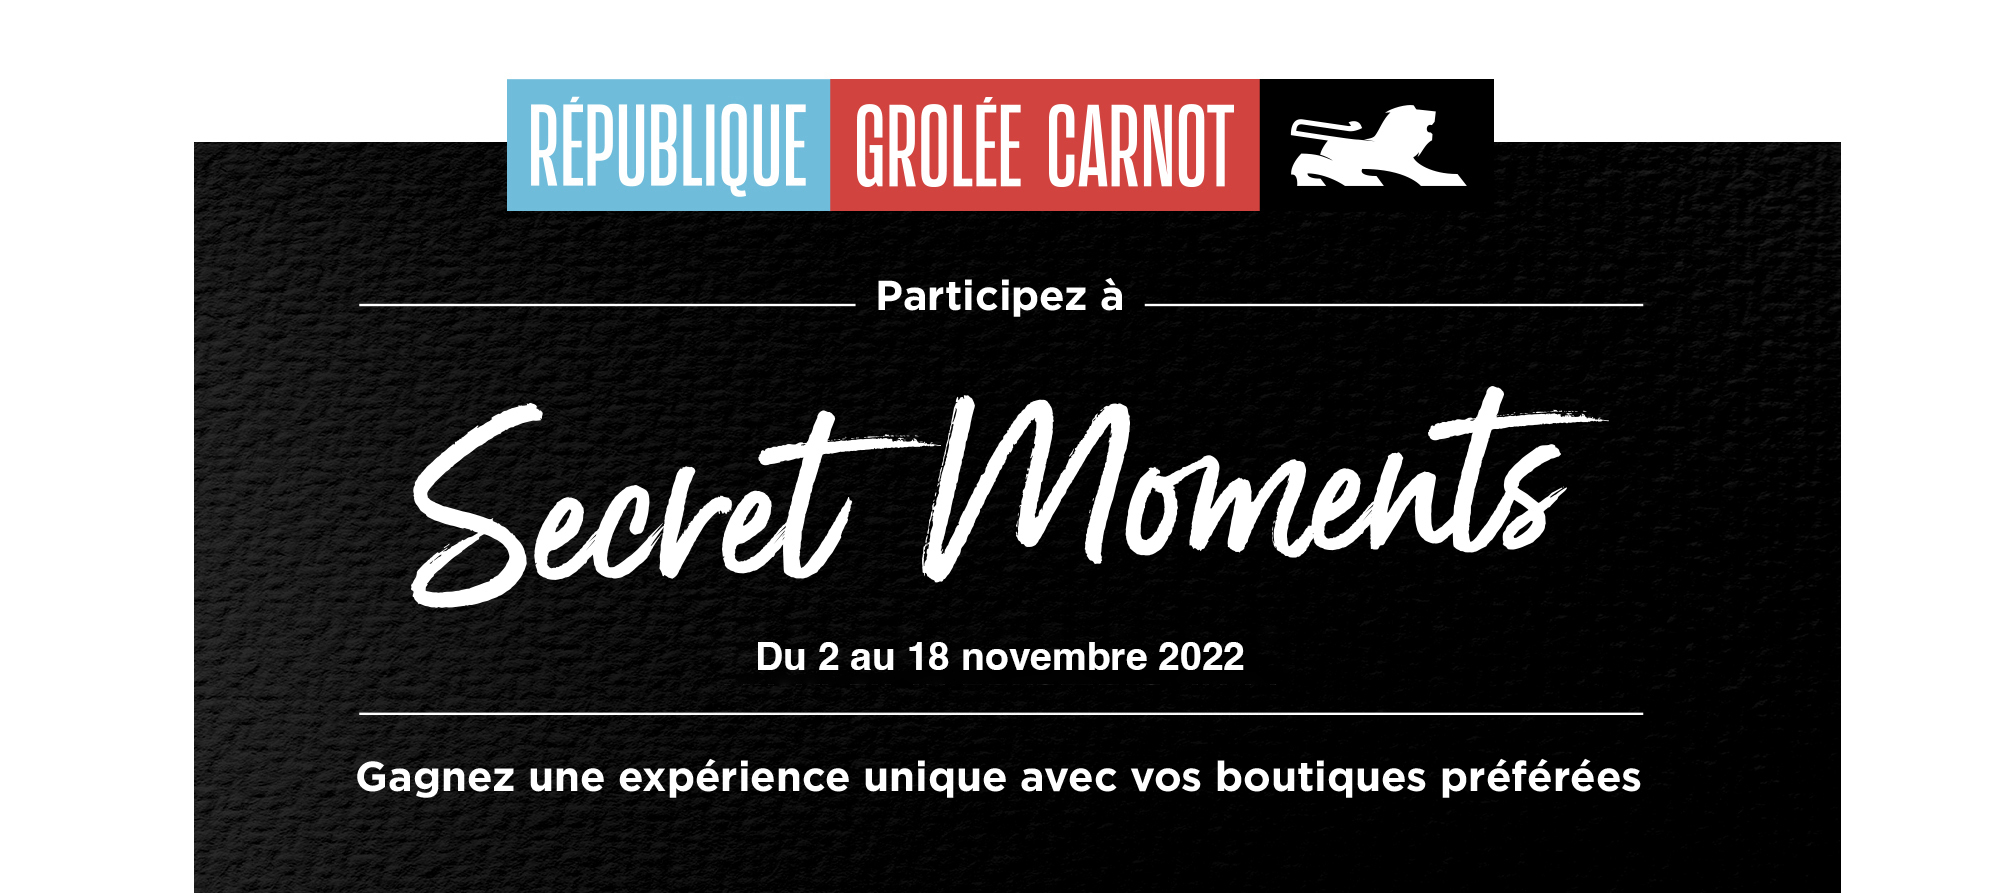 Secret moments in République Grolée-Carnot du 2 au 18 novembre 2022